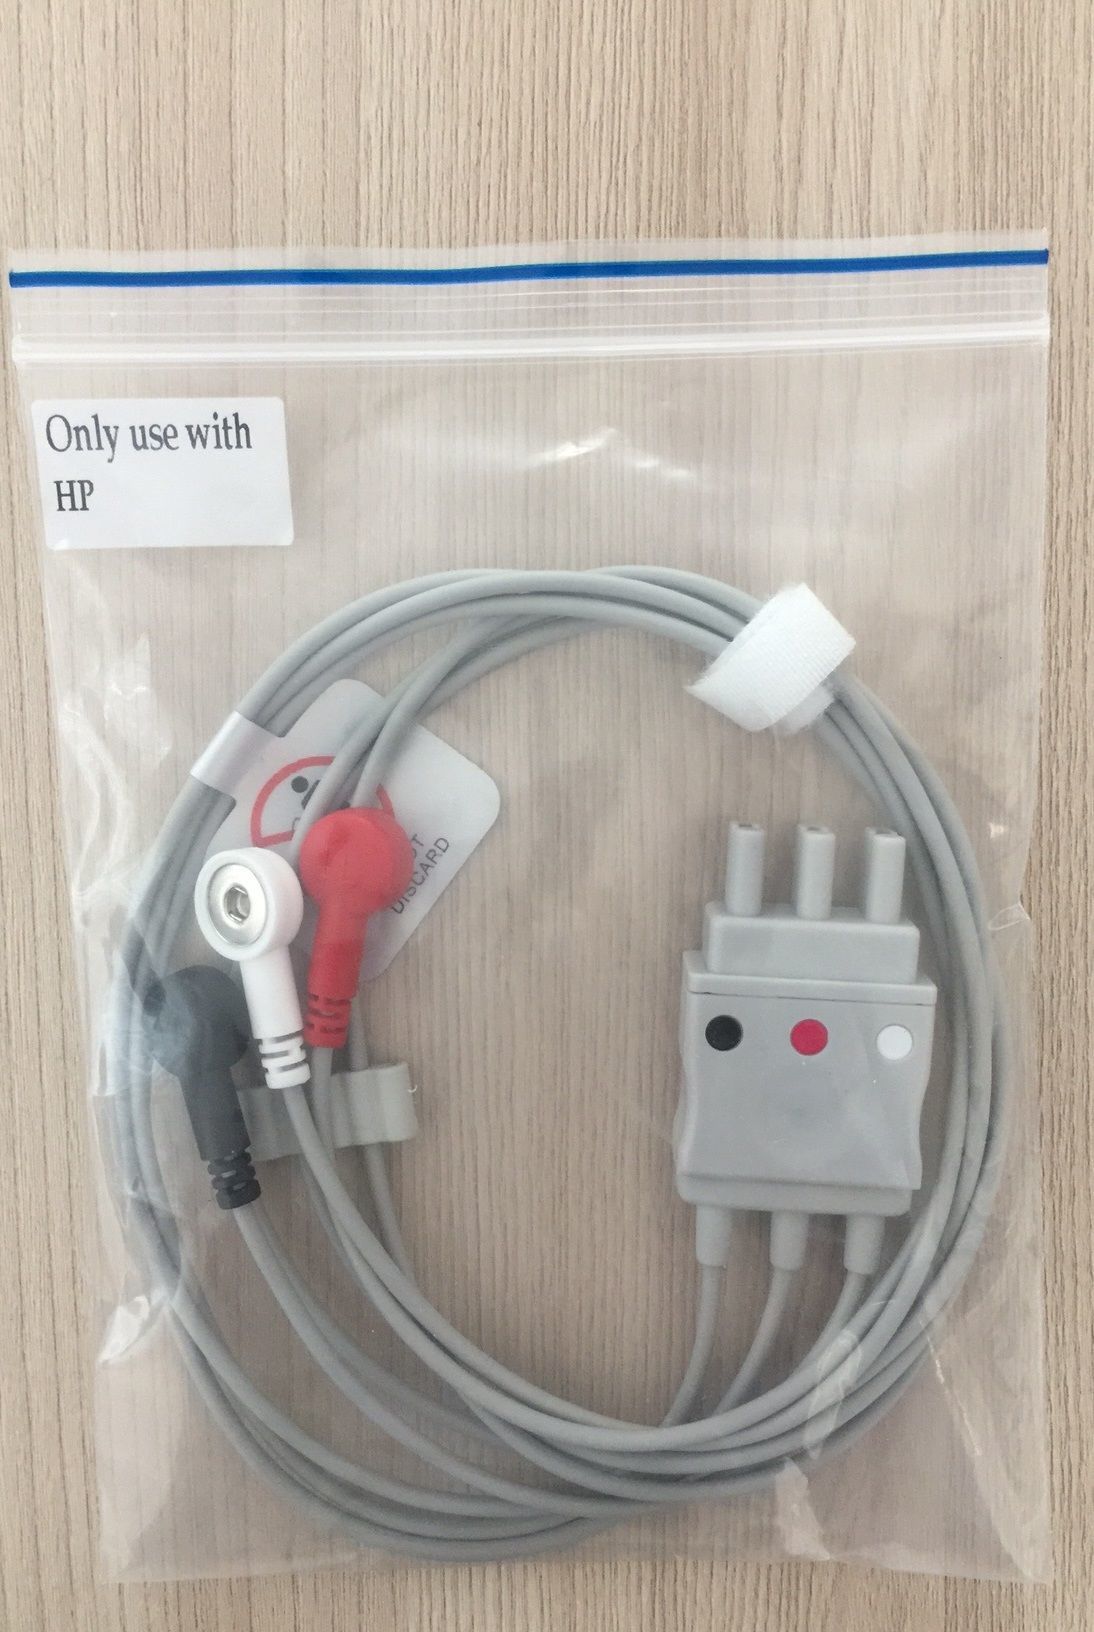 ECG 3 Lead wires cable for Philips HP_สายอีซีจี แบบ 3 ลีด สำหรับเครื่องมอนิเตอร์  ฟิลิปส์ เอสพี